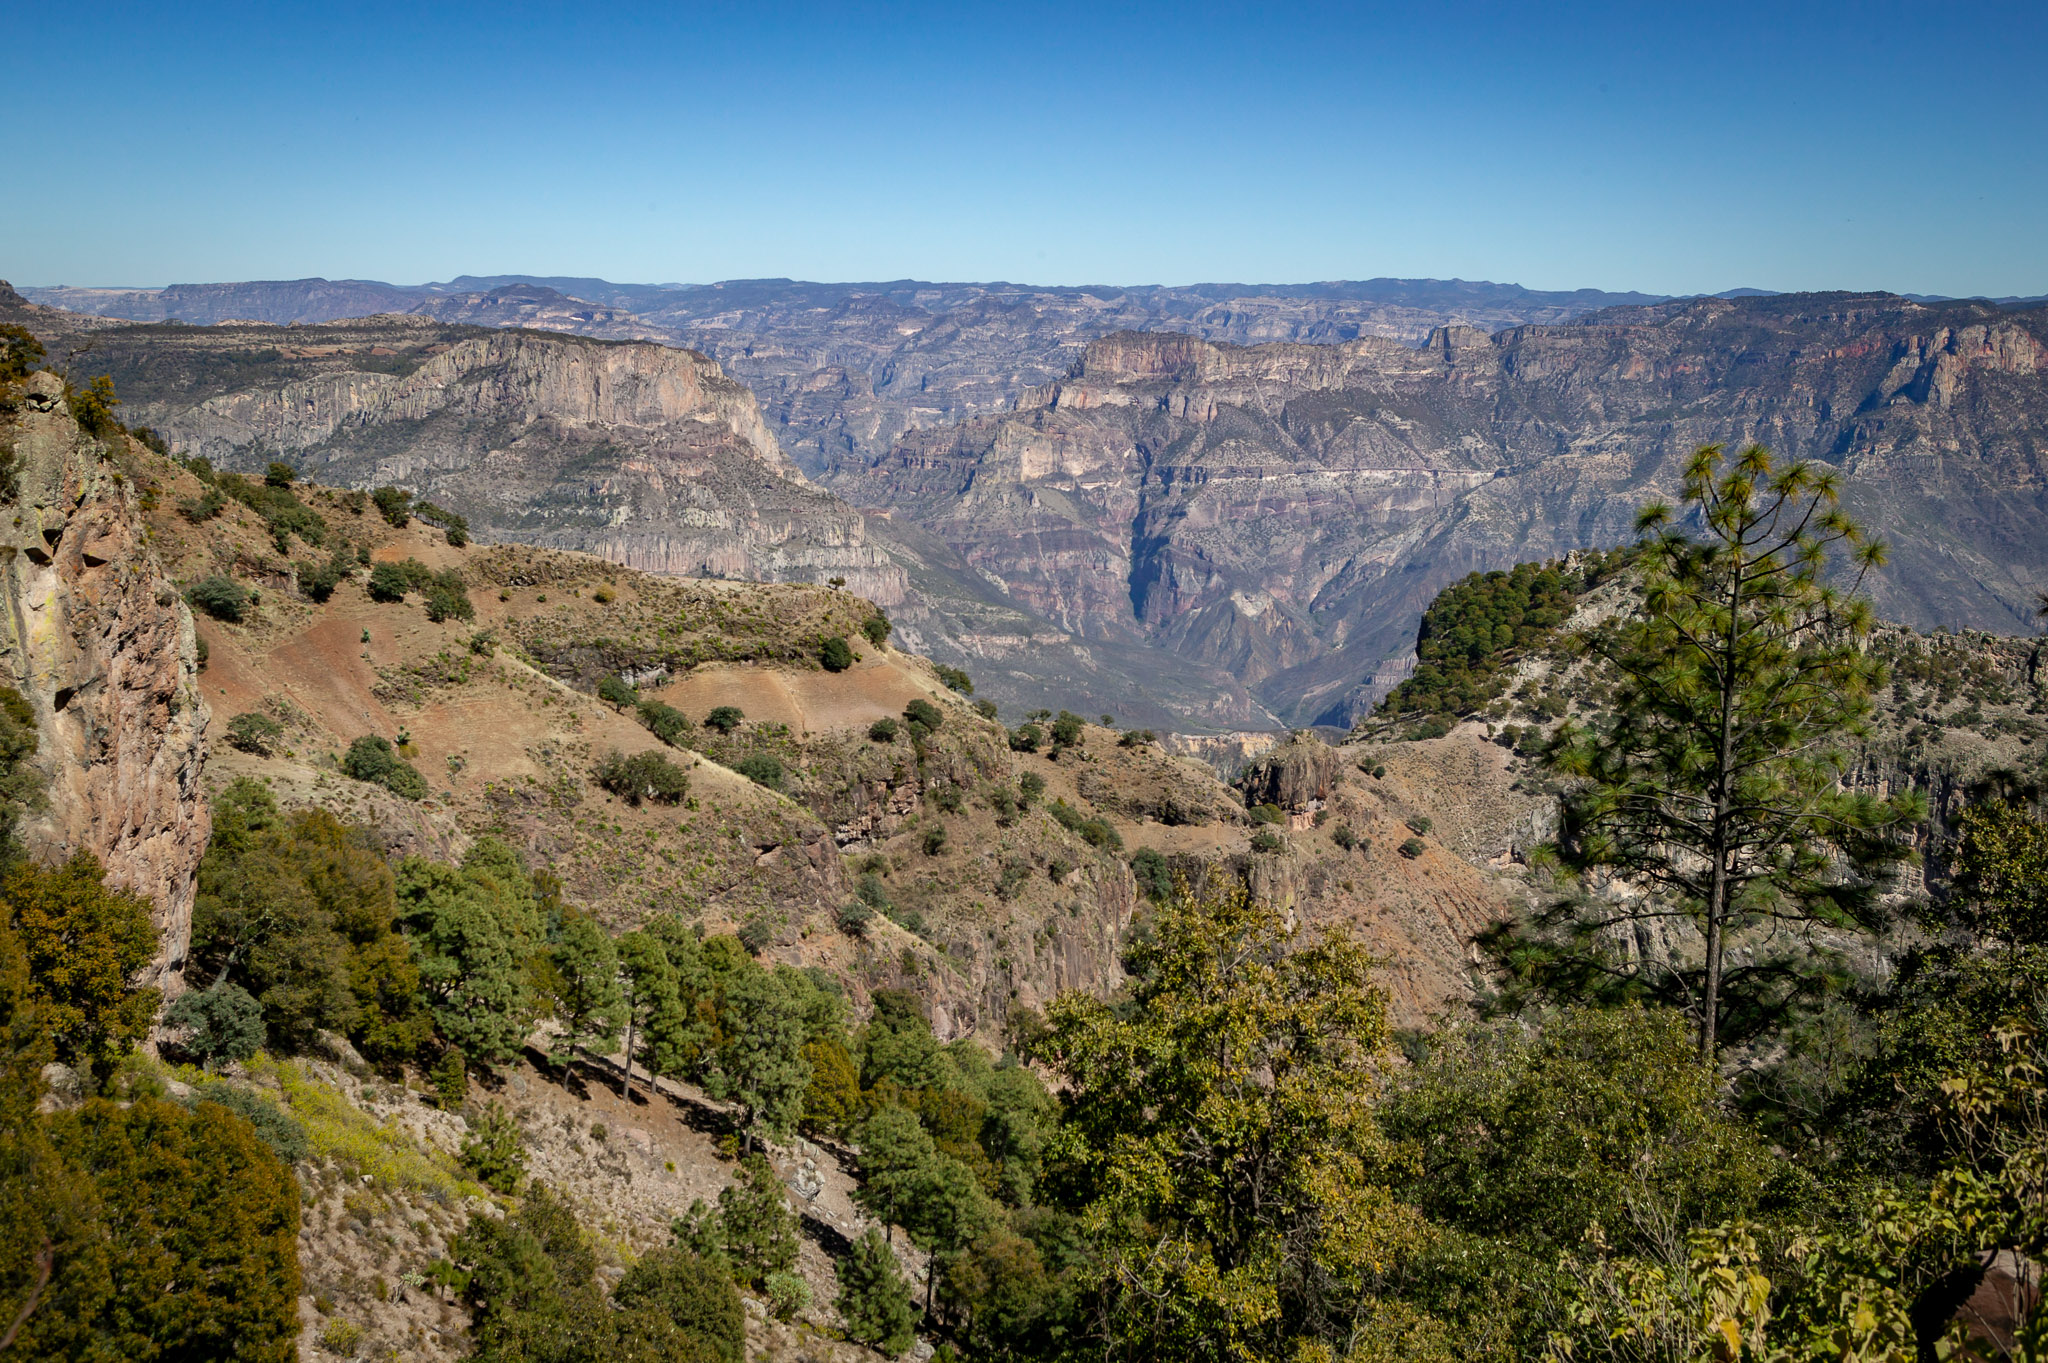 Copper Canyon views over Urique